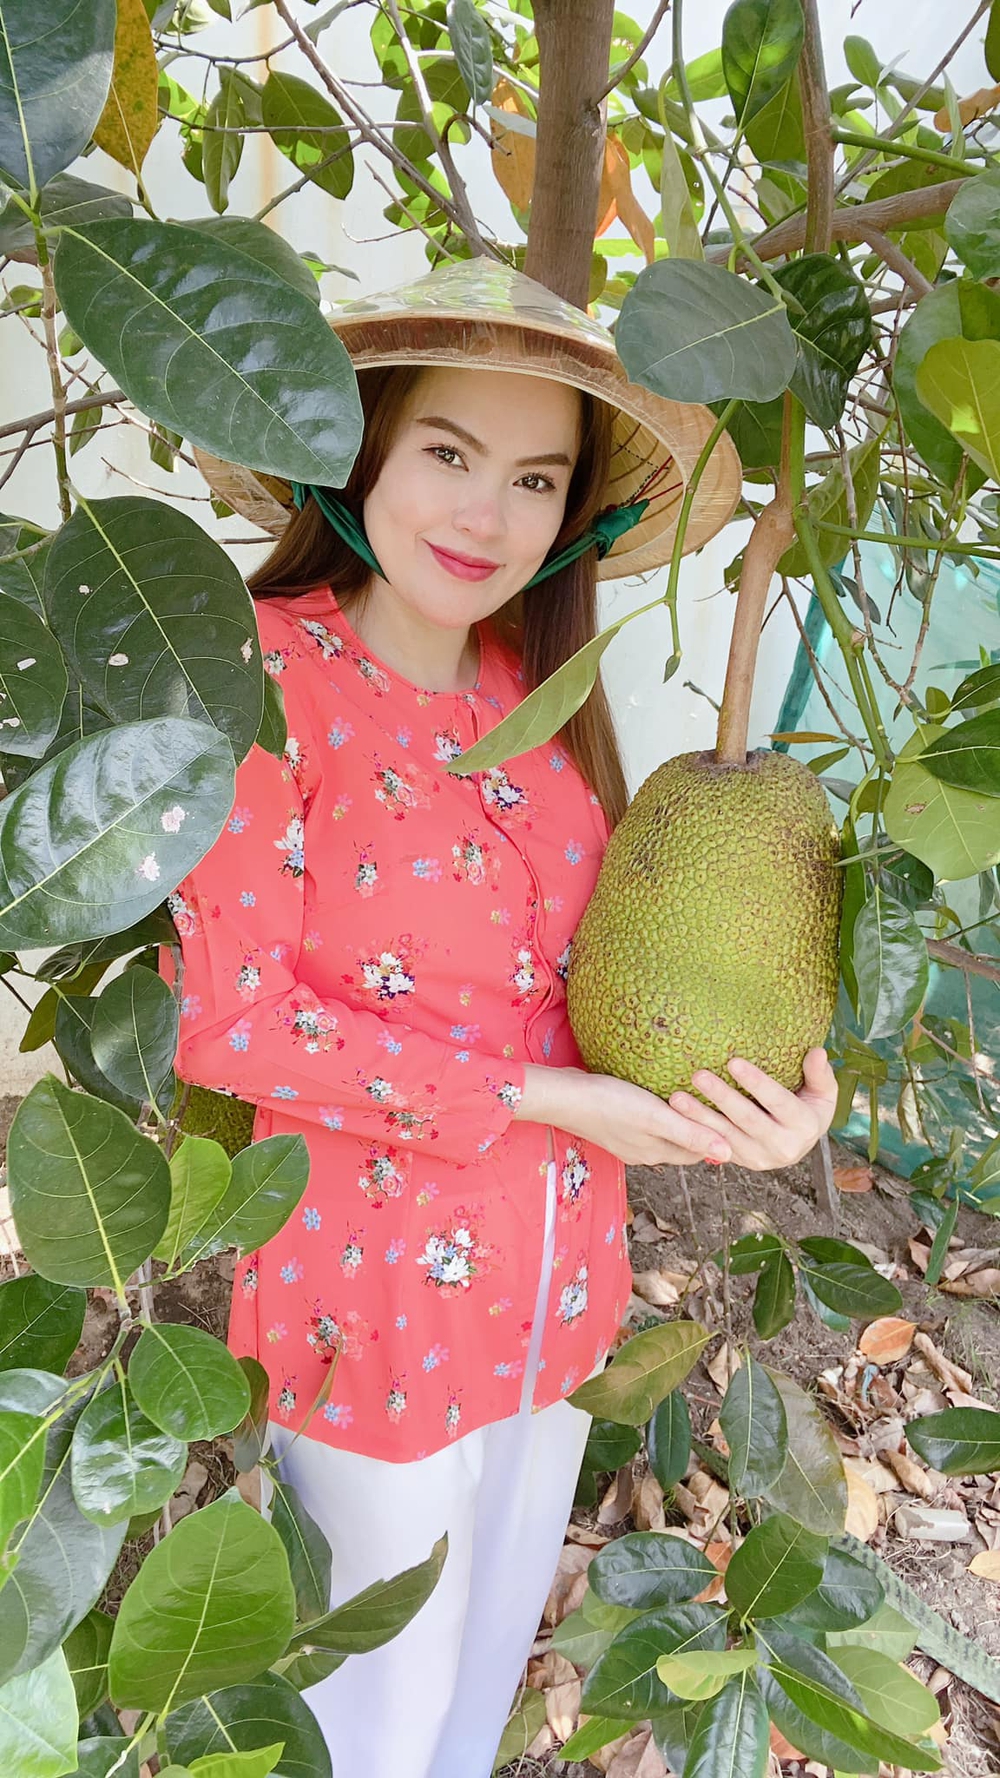 Hoa hậu Phương Lê miệt mài trồng rau, nuôi gà trong căn biệt thự 200 tỷ - Ảnh 6.